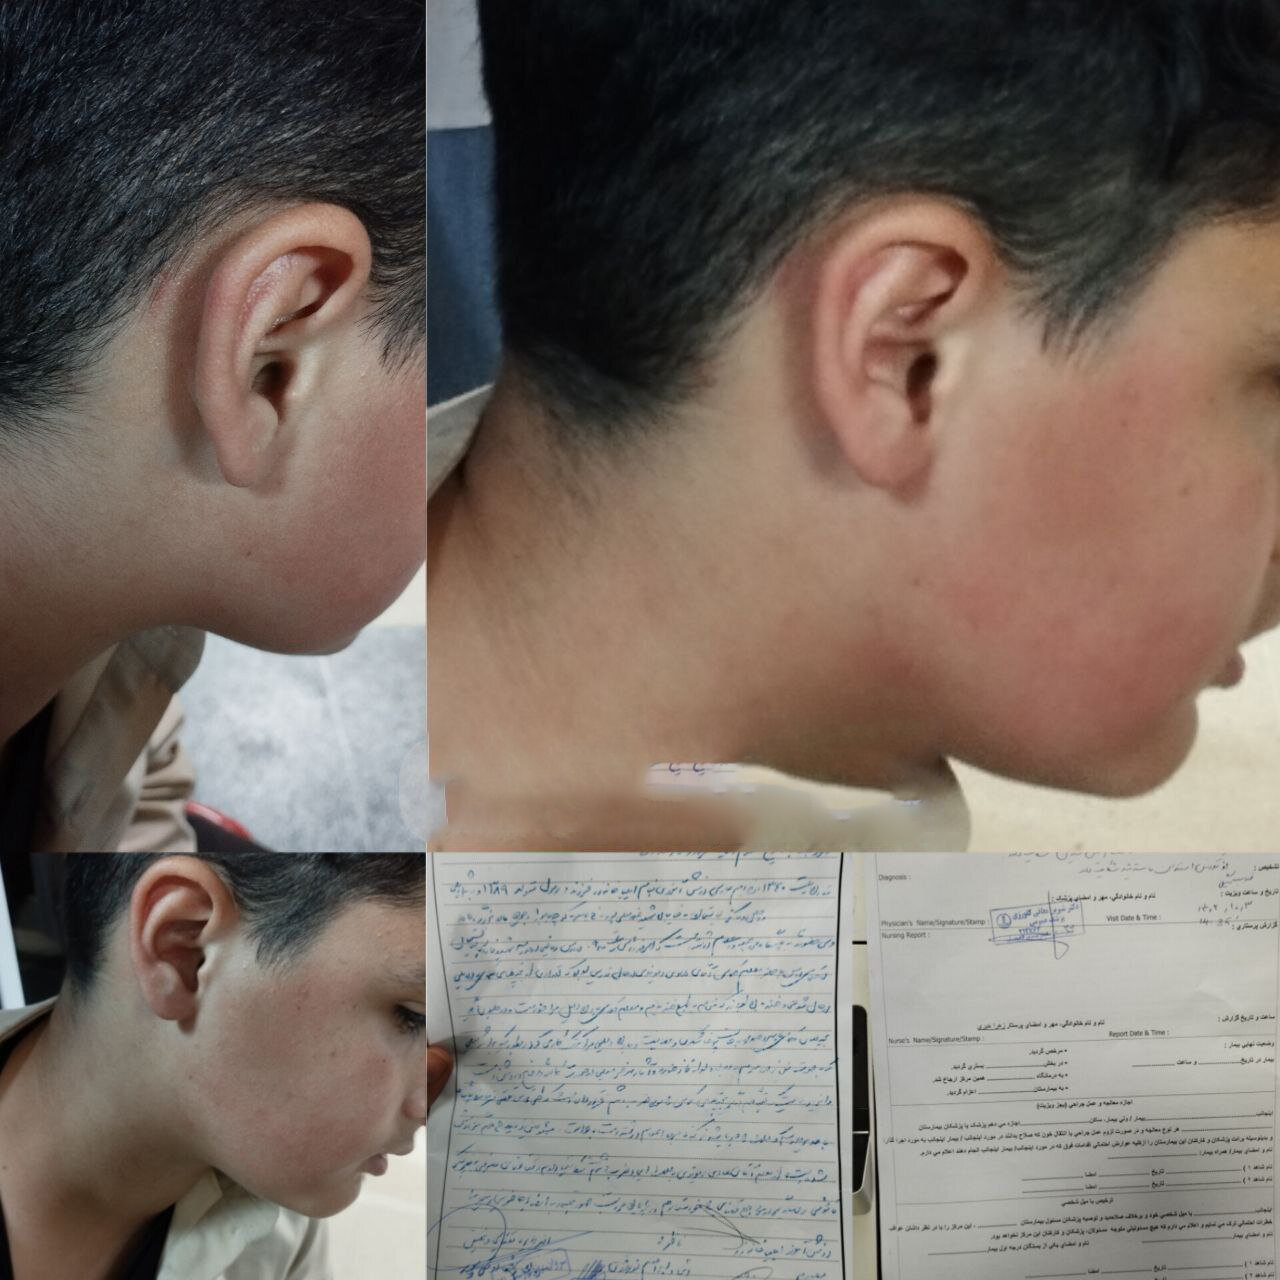 لغو ابلاغ معلم خاطی در پی تنبیه بدنی دانش آموز لاهیجانی | عکس